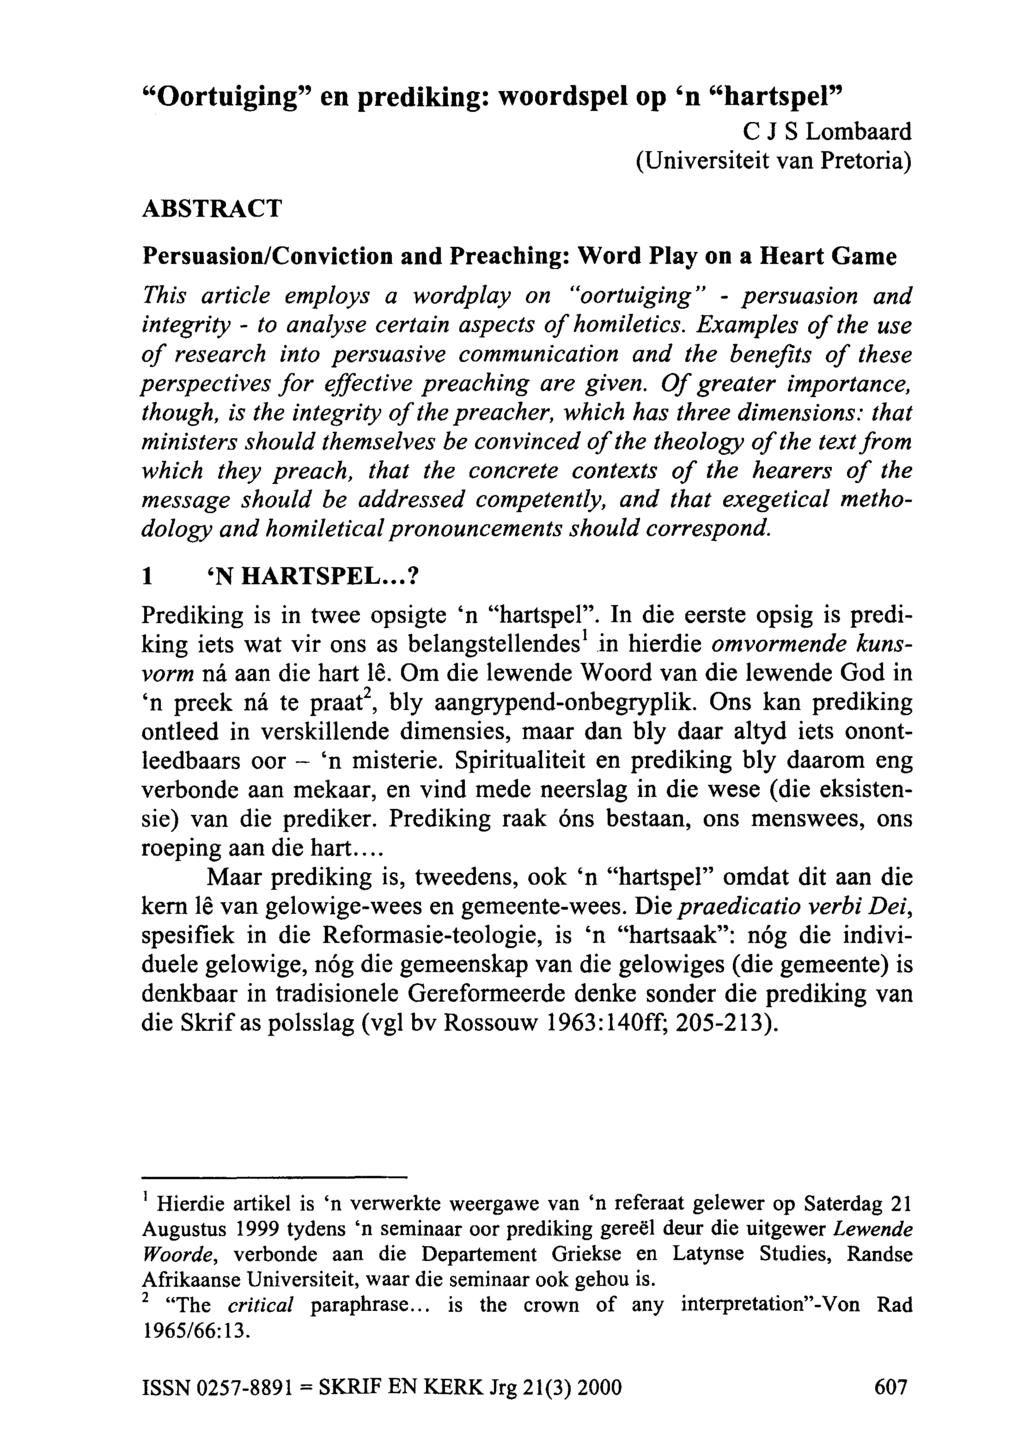 "Oortuiging" en prediking: woordspel op 'n "hartspel" C J S Lombaard (Universiteit van Pretoria) ABSTRACT Persuasion/Conviction and Preaching: Word Play on a Heart Game This article employs a